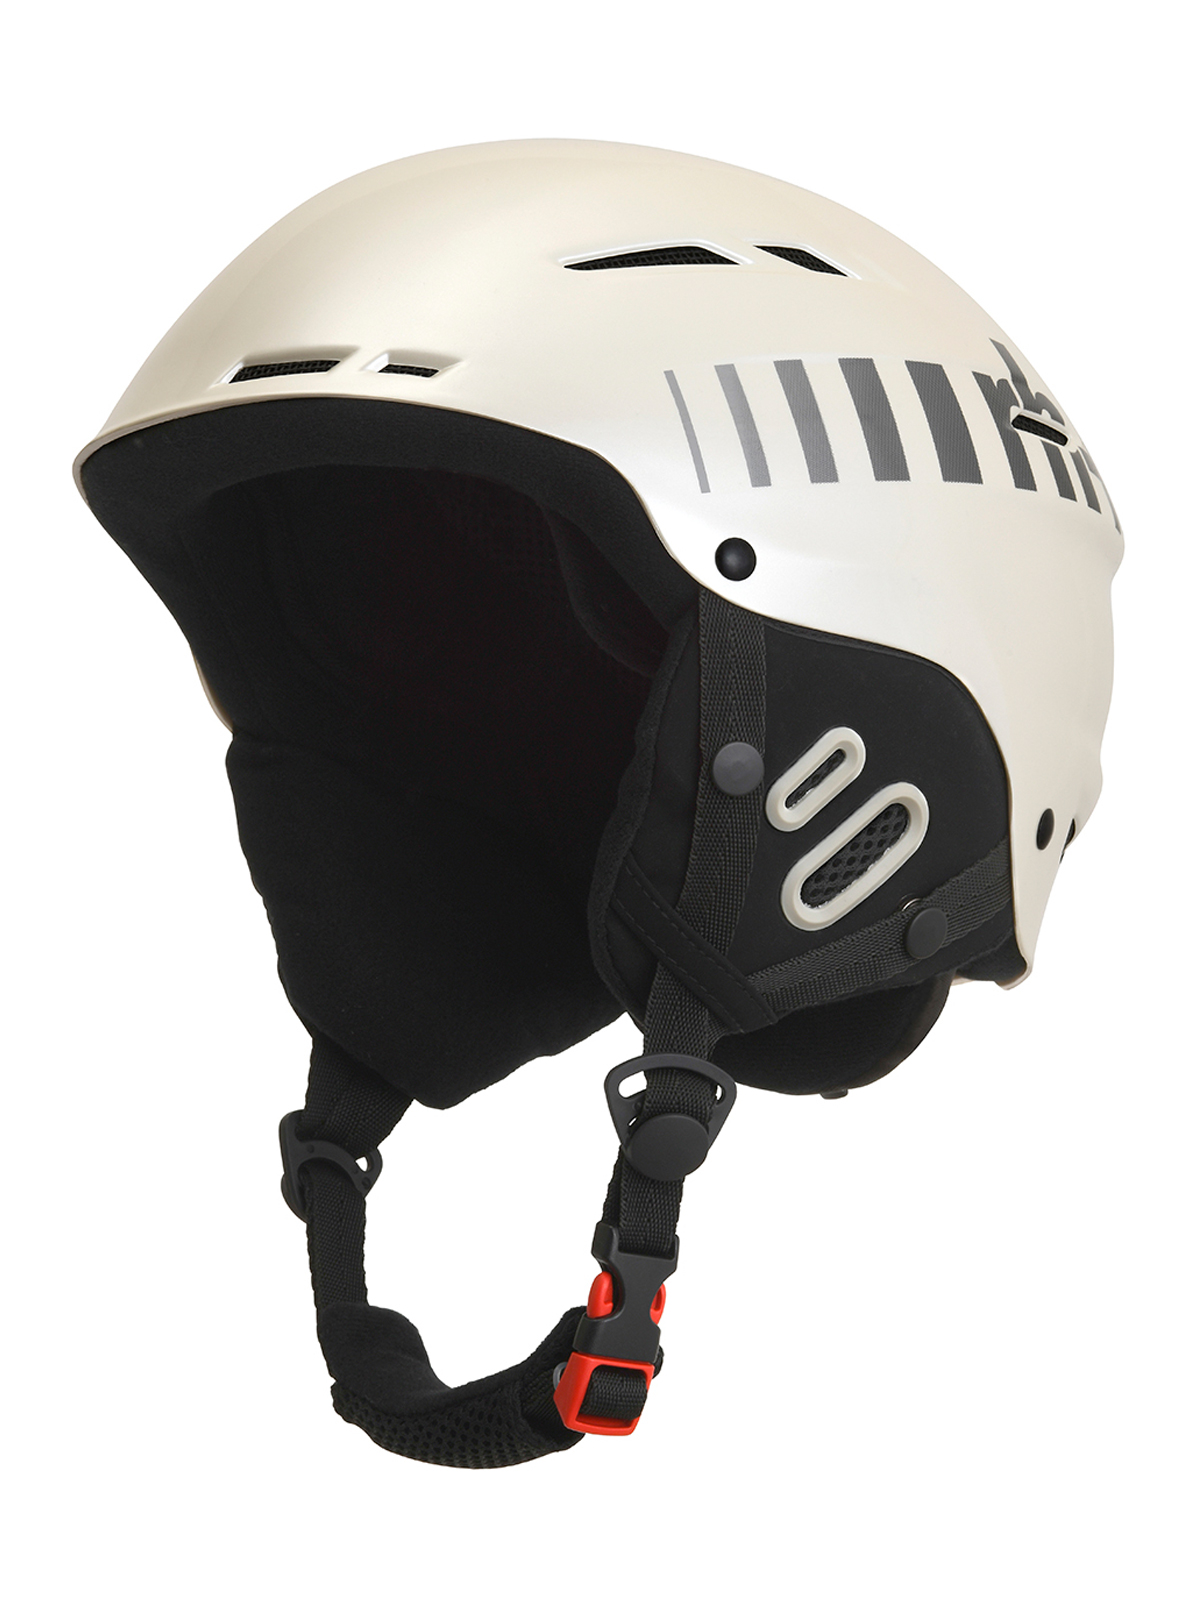 Lyzarska-helma-Zero-rh-Rider-36-1.jpg